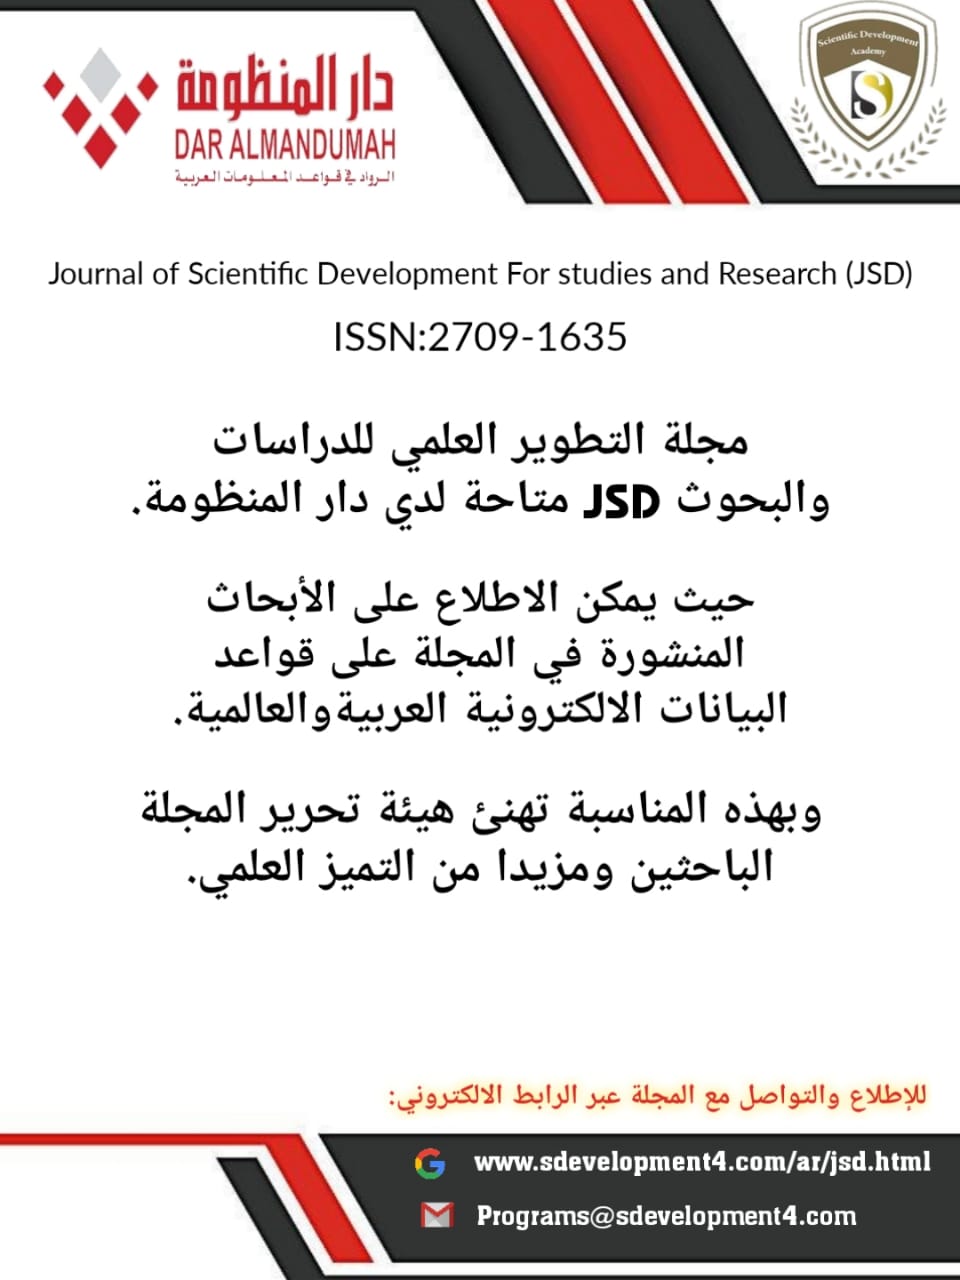 مجلة التطوير العلمي للدراسات والبحوث JSDمتاحة لدى دار المنظومة ....